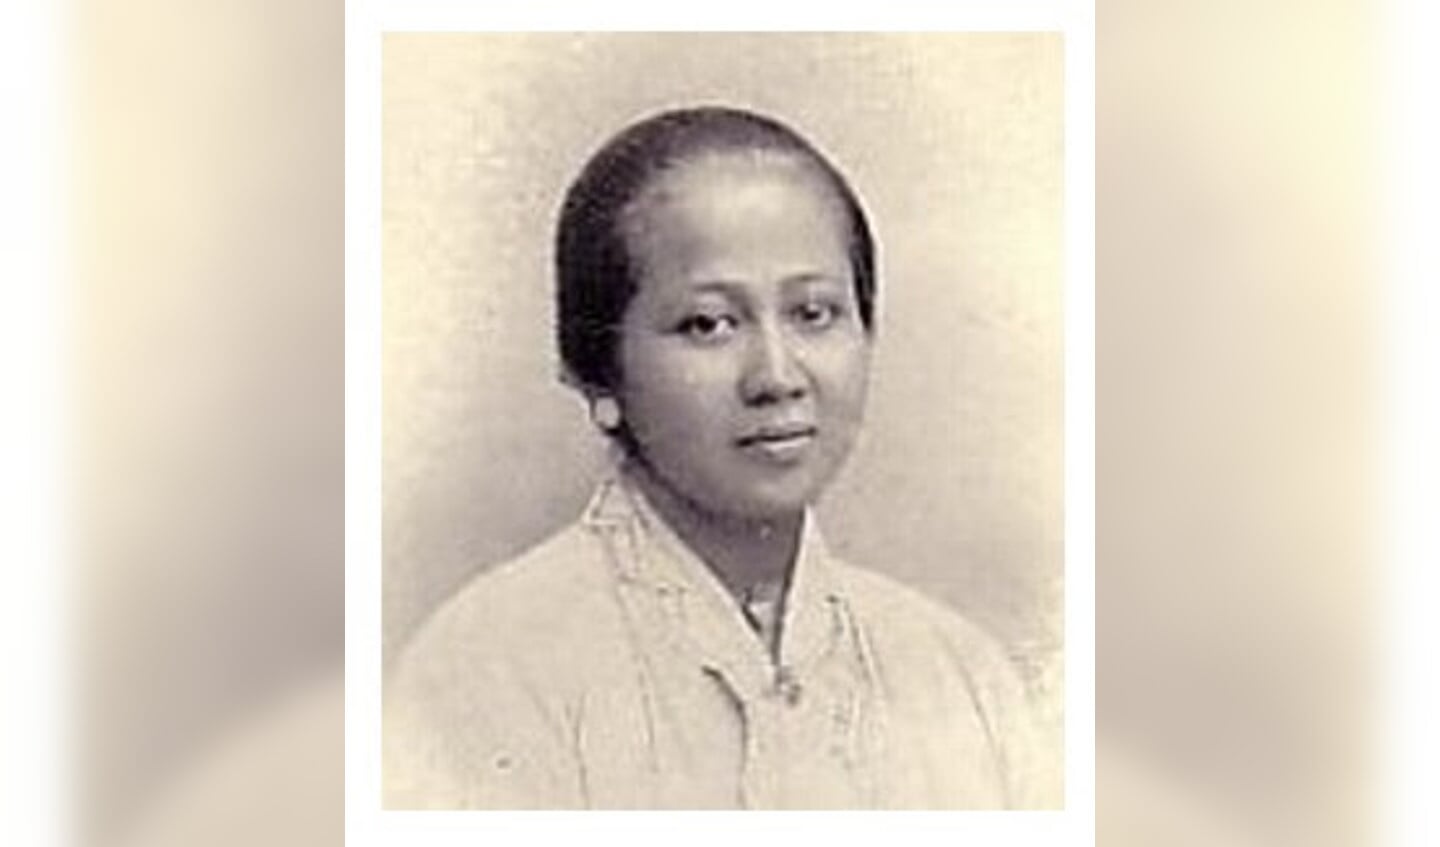 Mevr. Raden Adjeng Kartine, nog altijd gewaardeerd in Indonesië als belangrijk emancipator van de vrouw.